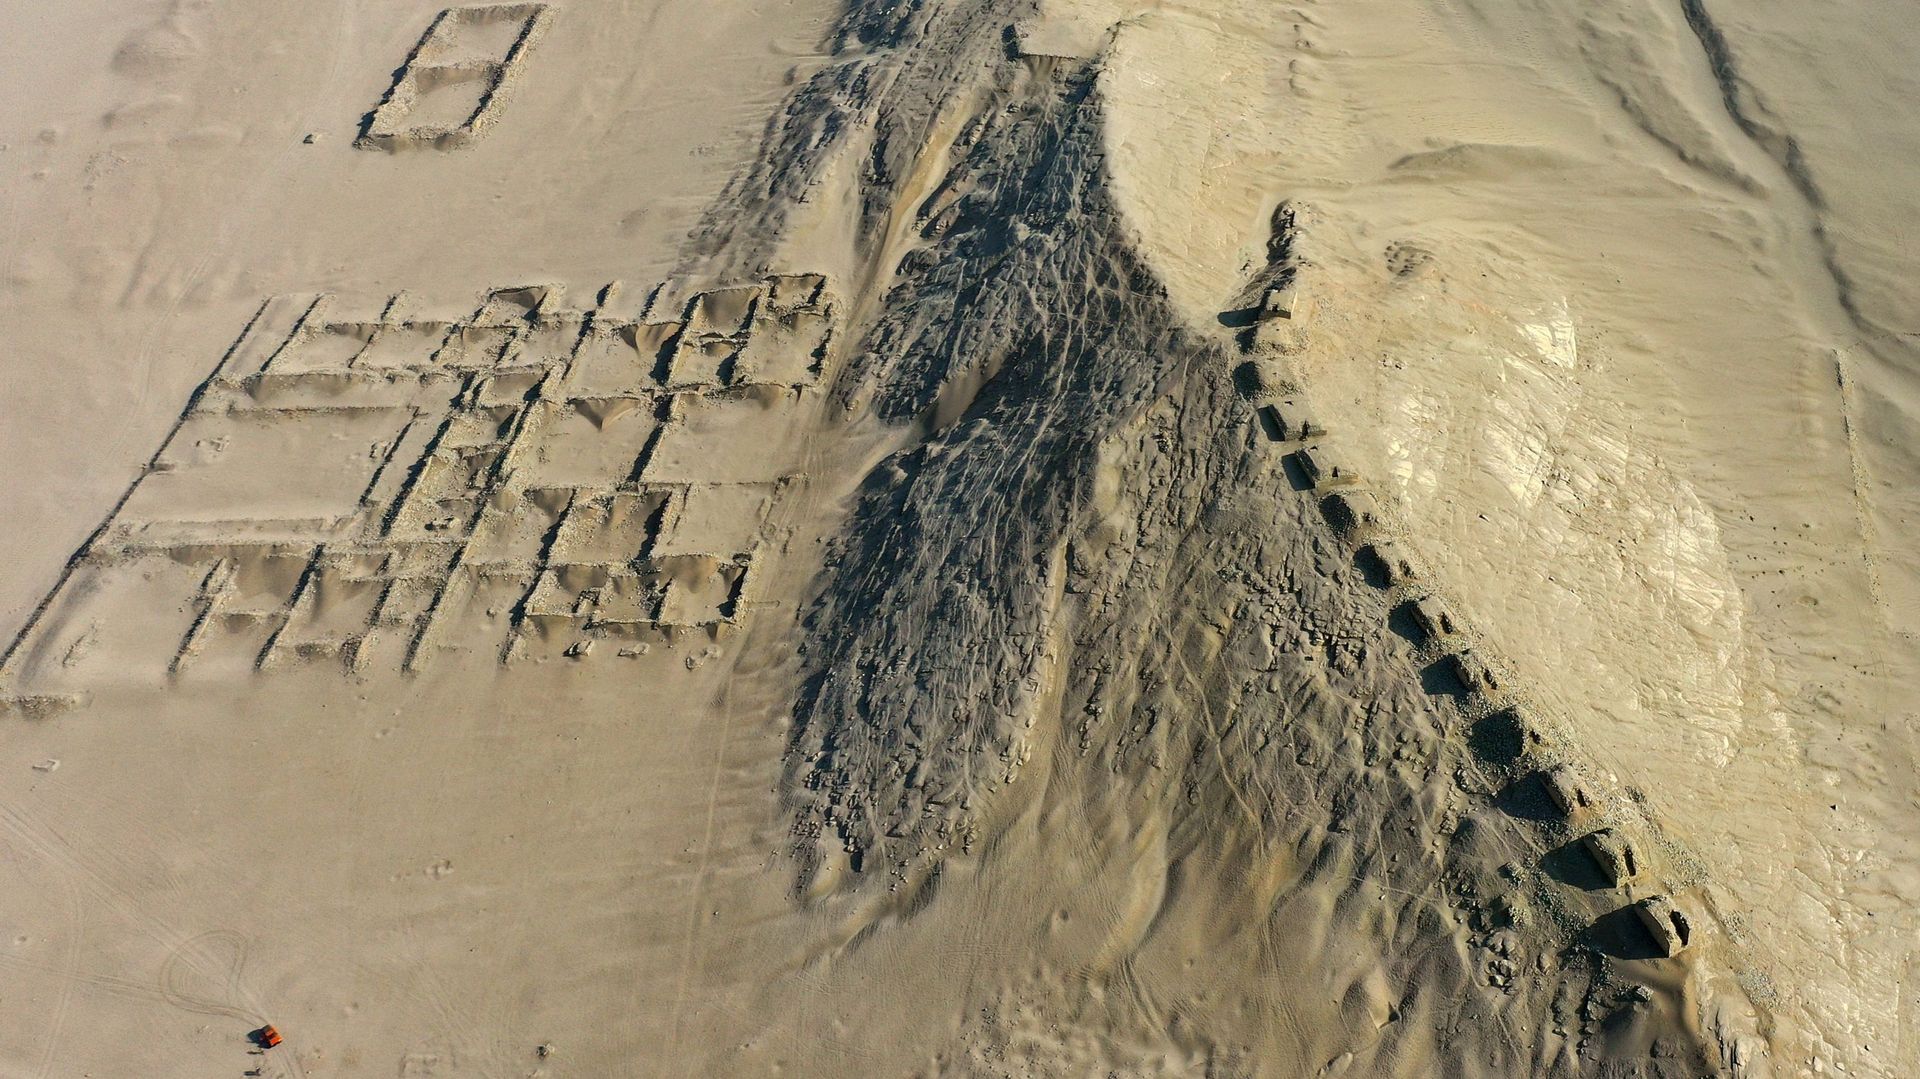 L’ensemble archéoastronomique de Chanquillo est un site préhistorique (250-200 av. J.-C.) situé sur le littoral centre-nord du Pérou, dans la vallée de Casma